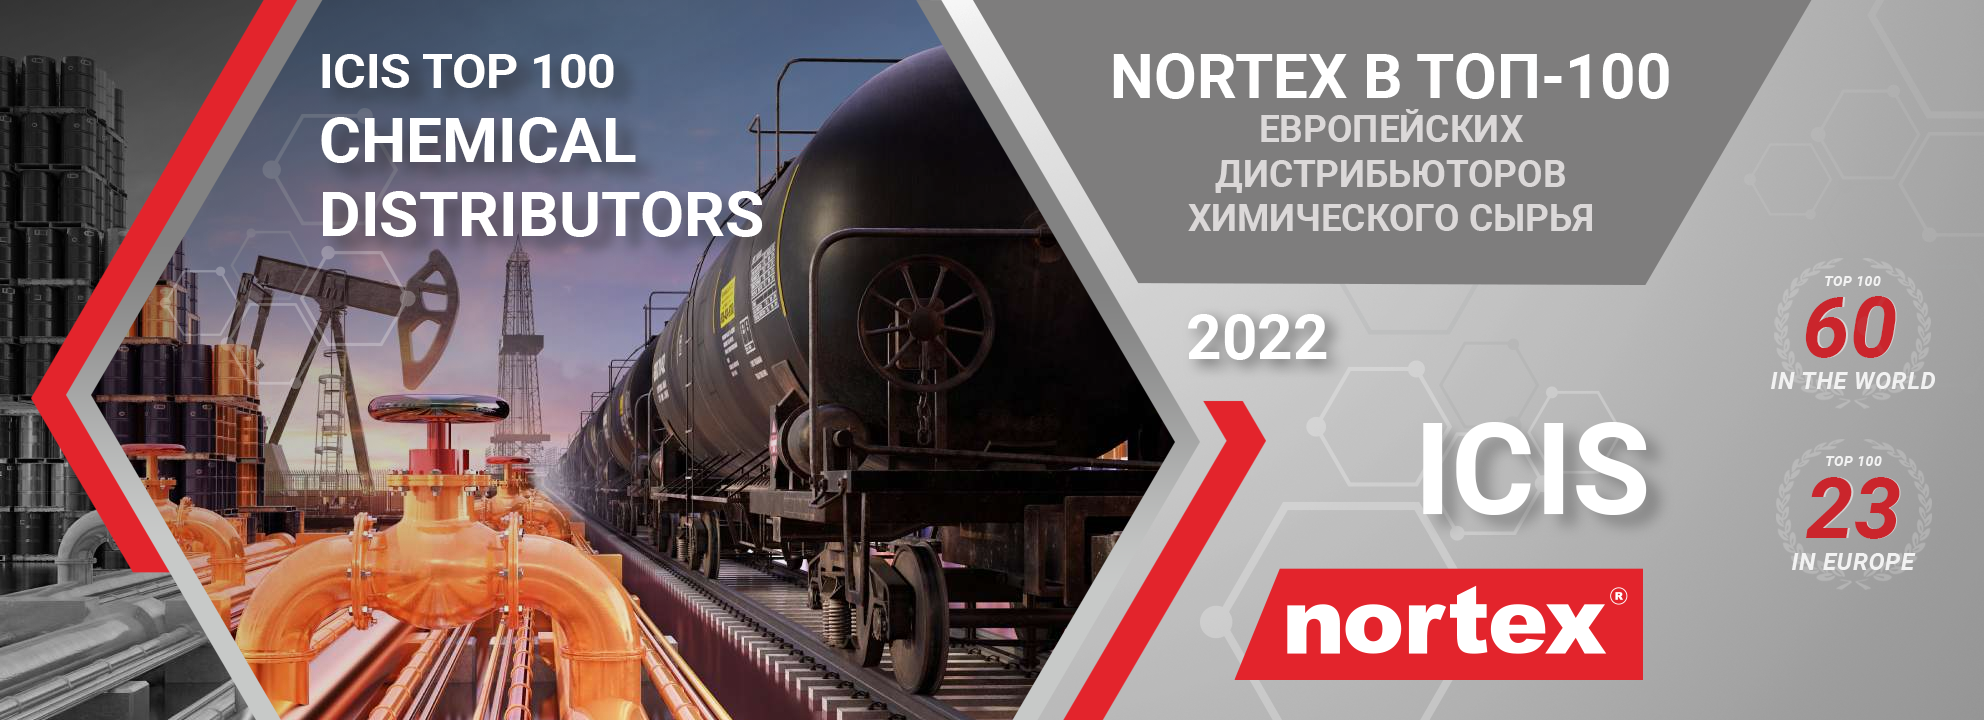 Nortex в TOП-100 Европейских дистрибьюторов химического сырья 2022